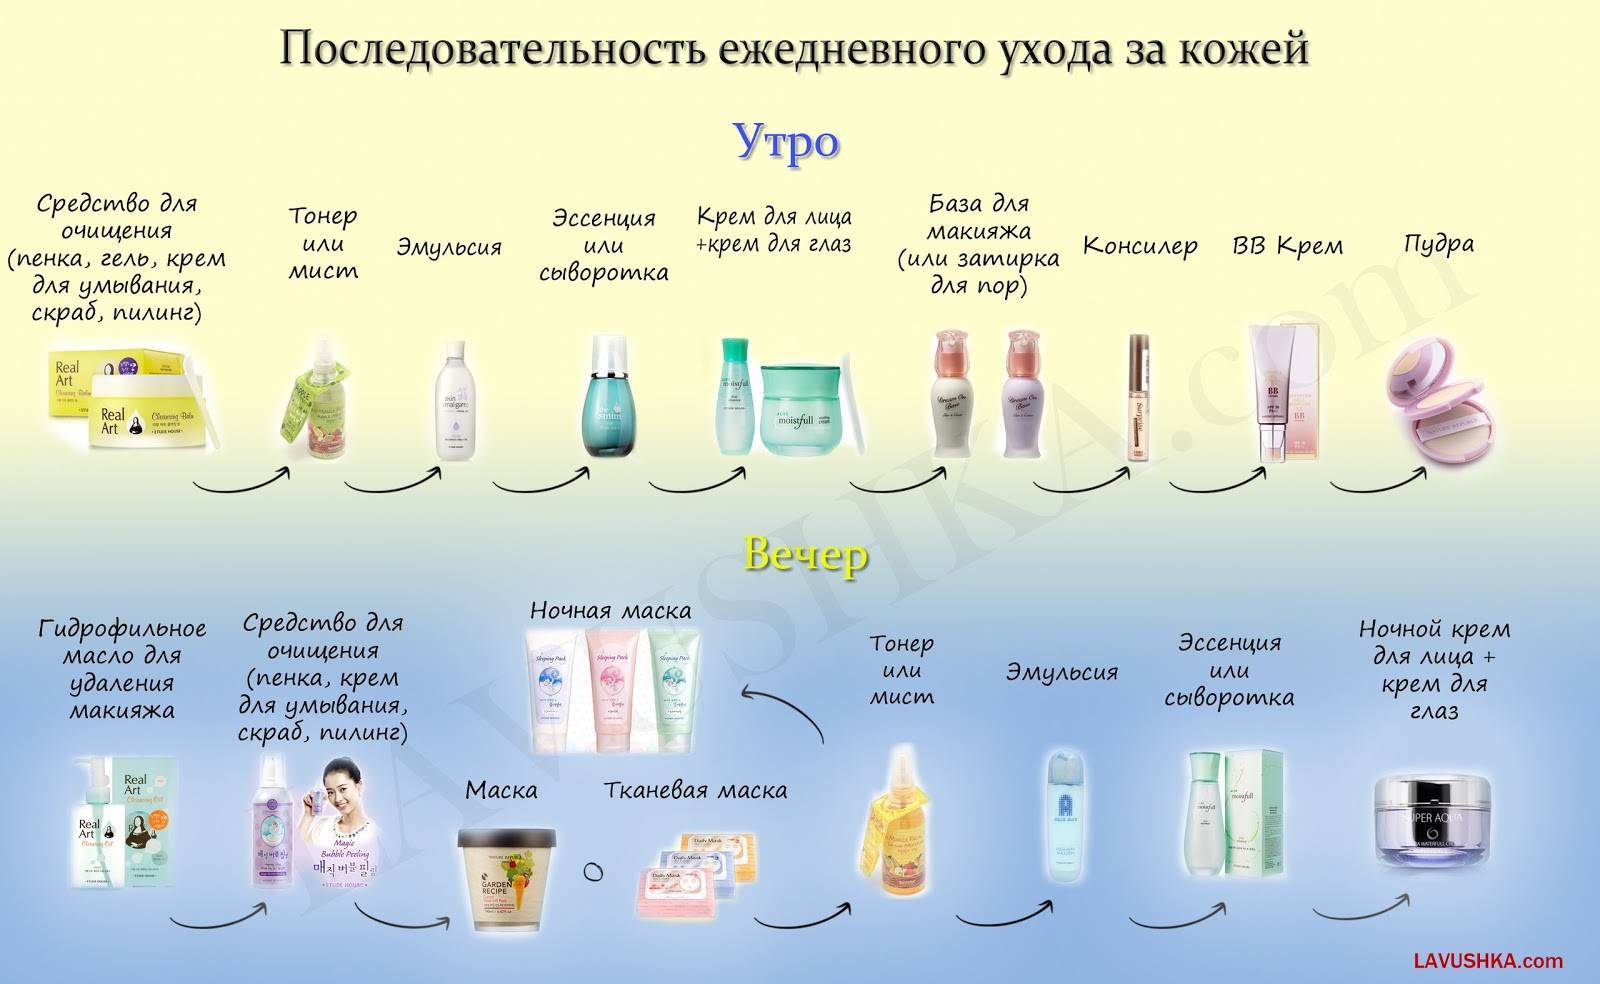 Корейский 10 ступенчатый уход за кожей лица » корейская косметика - все о косметике из кореи: бренды, отзывы, описания